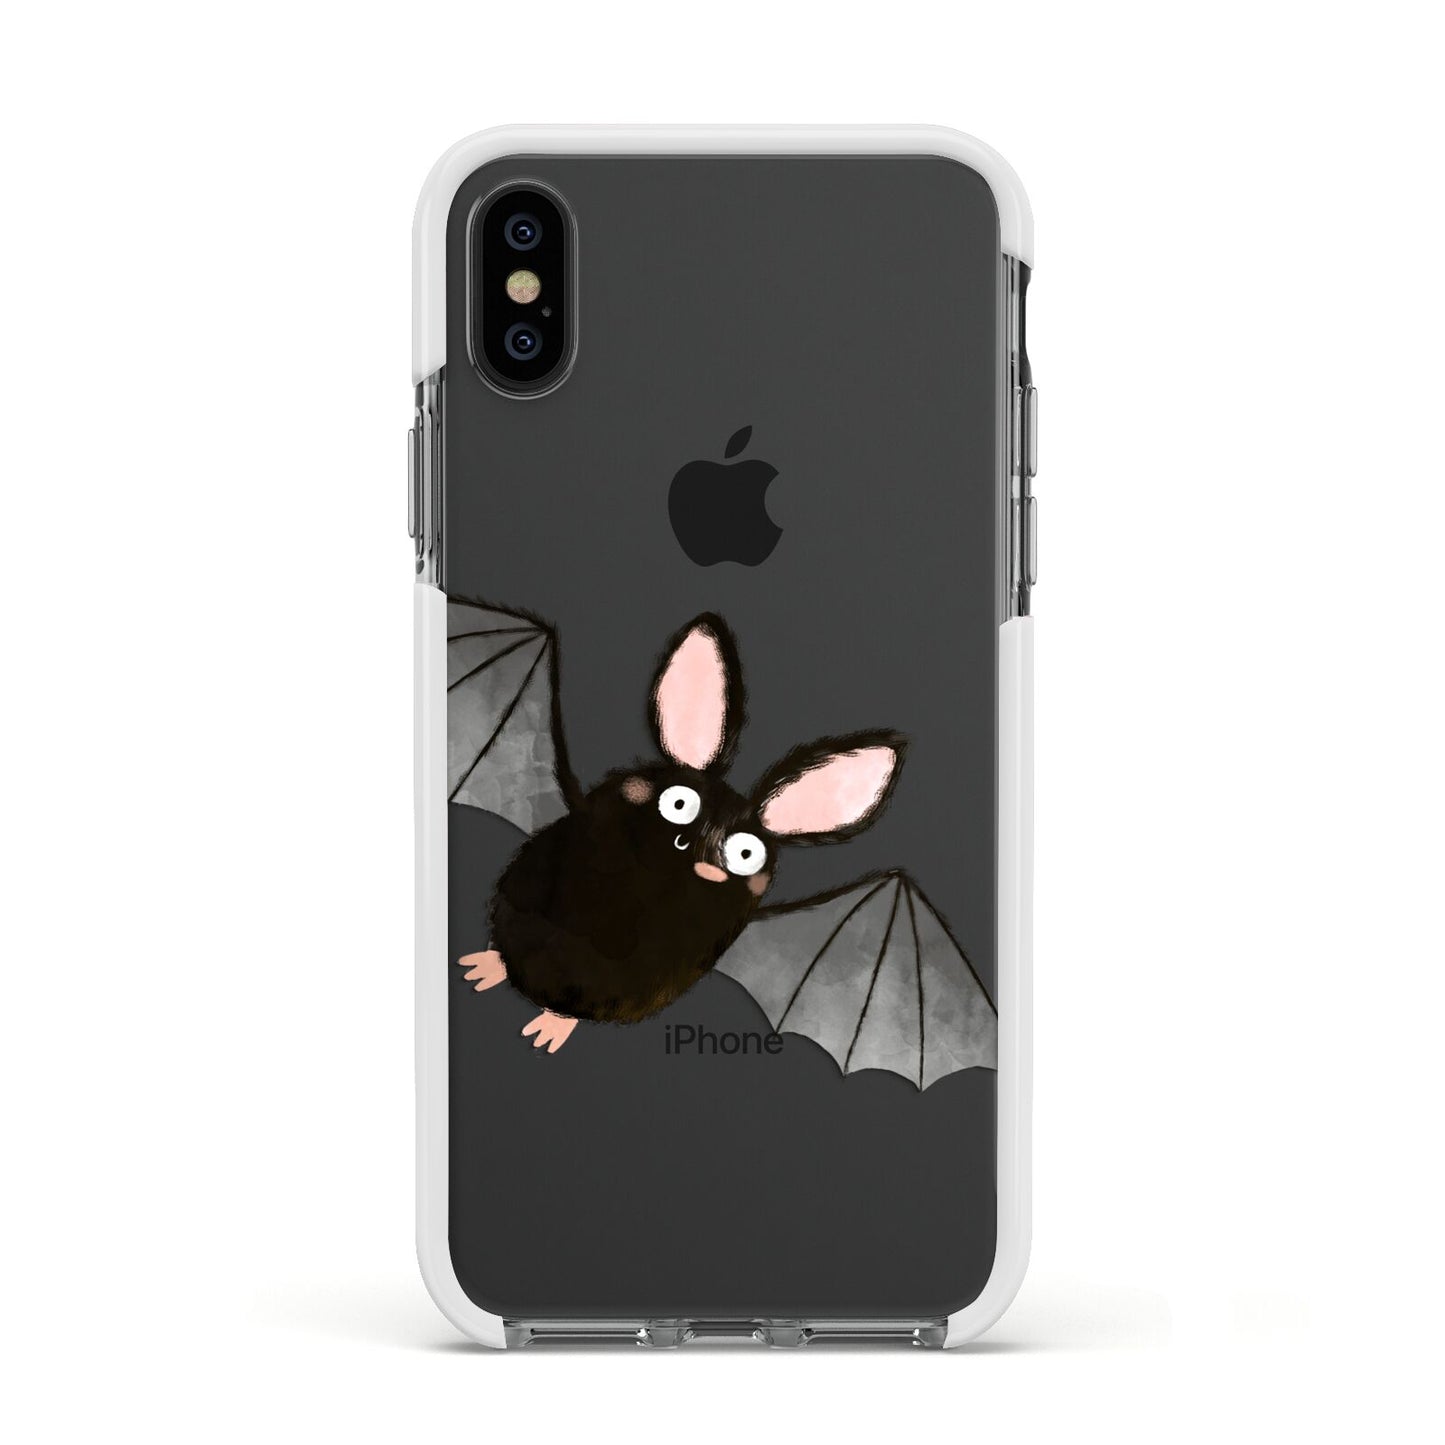 Bat Illustration Apple iPhone Xs Impact Case White Edge on Black Phone